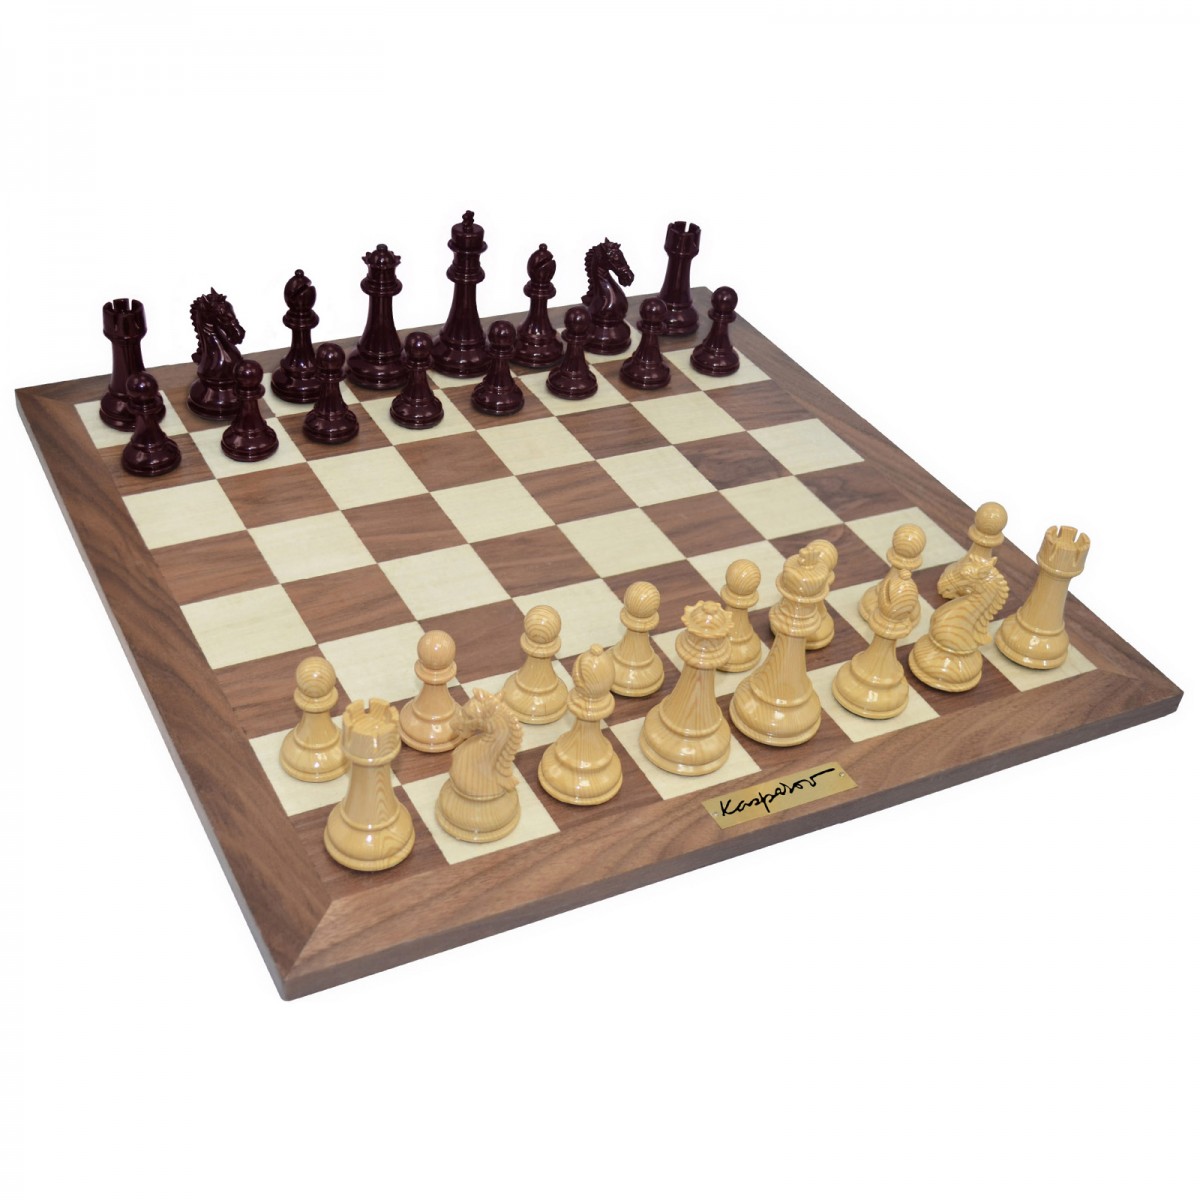 KASPAROV Championship Chess Set